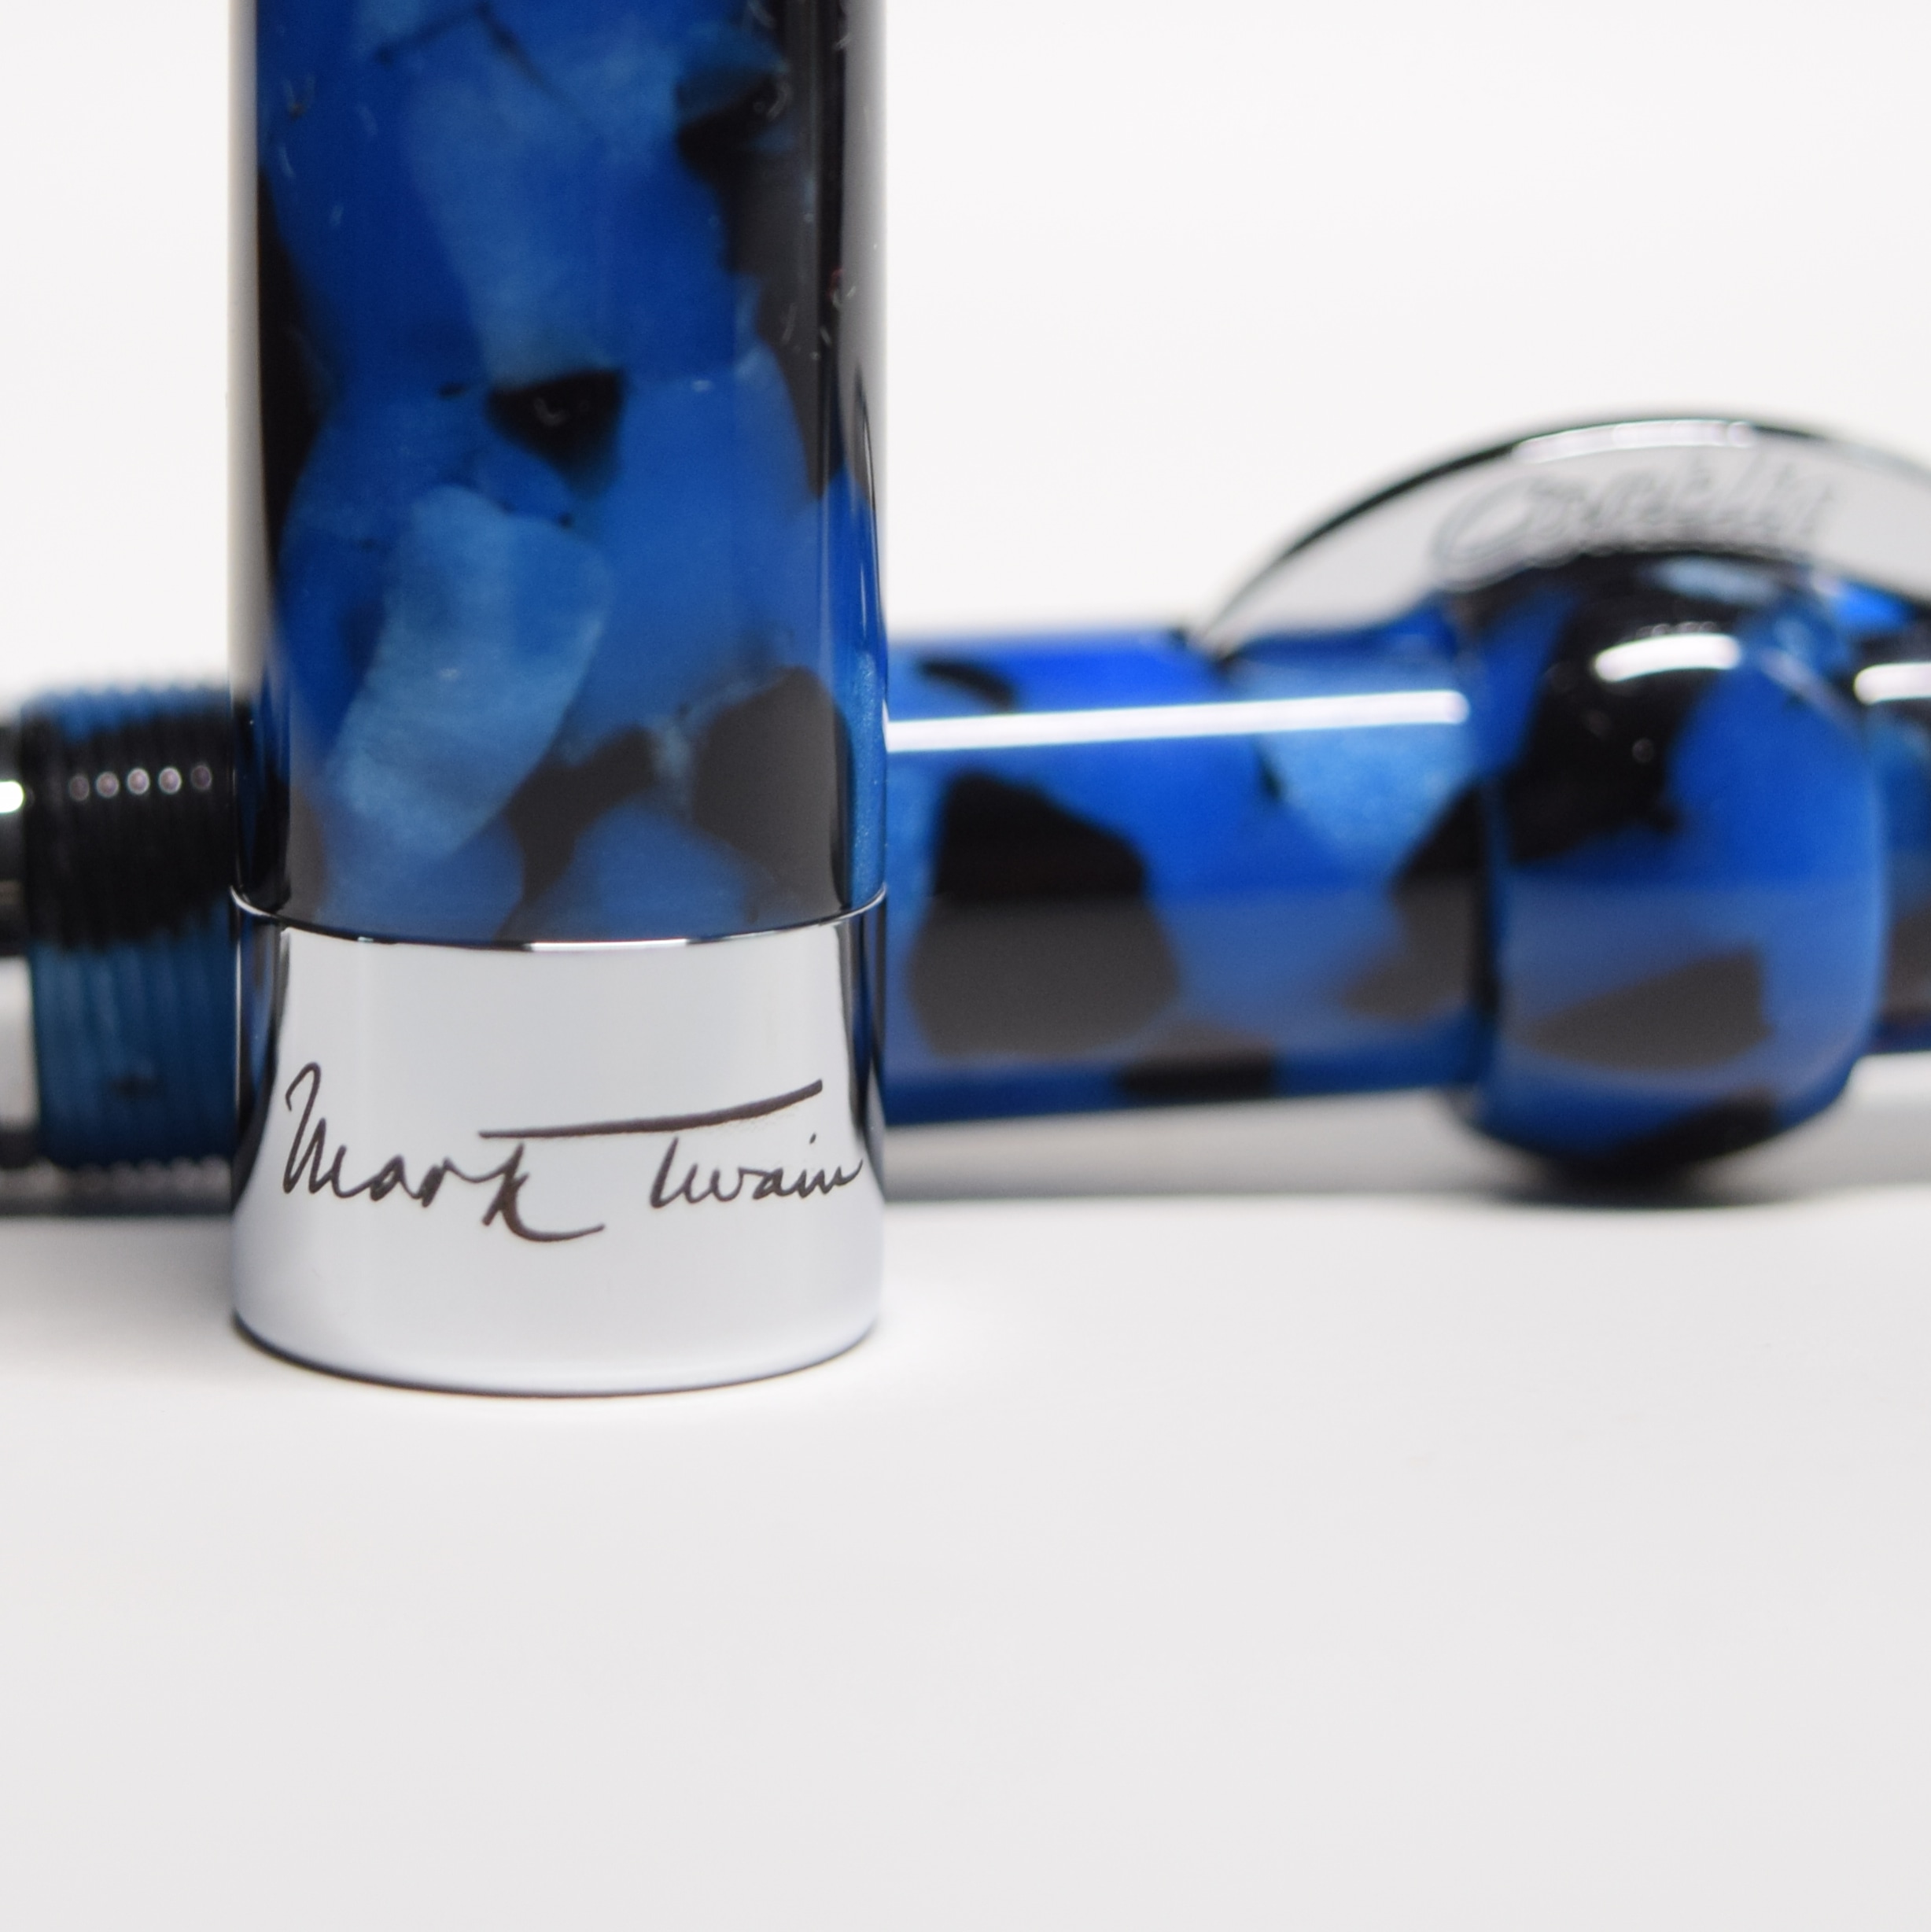 Conklin Mark Twain Crescent Filler Fountain Pen - Vintage Blue